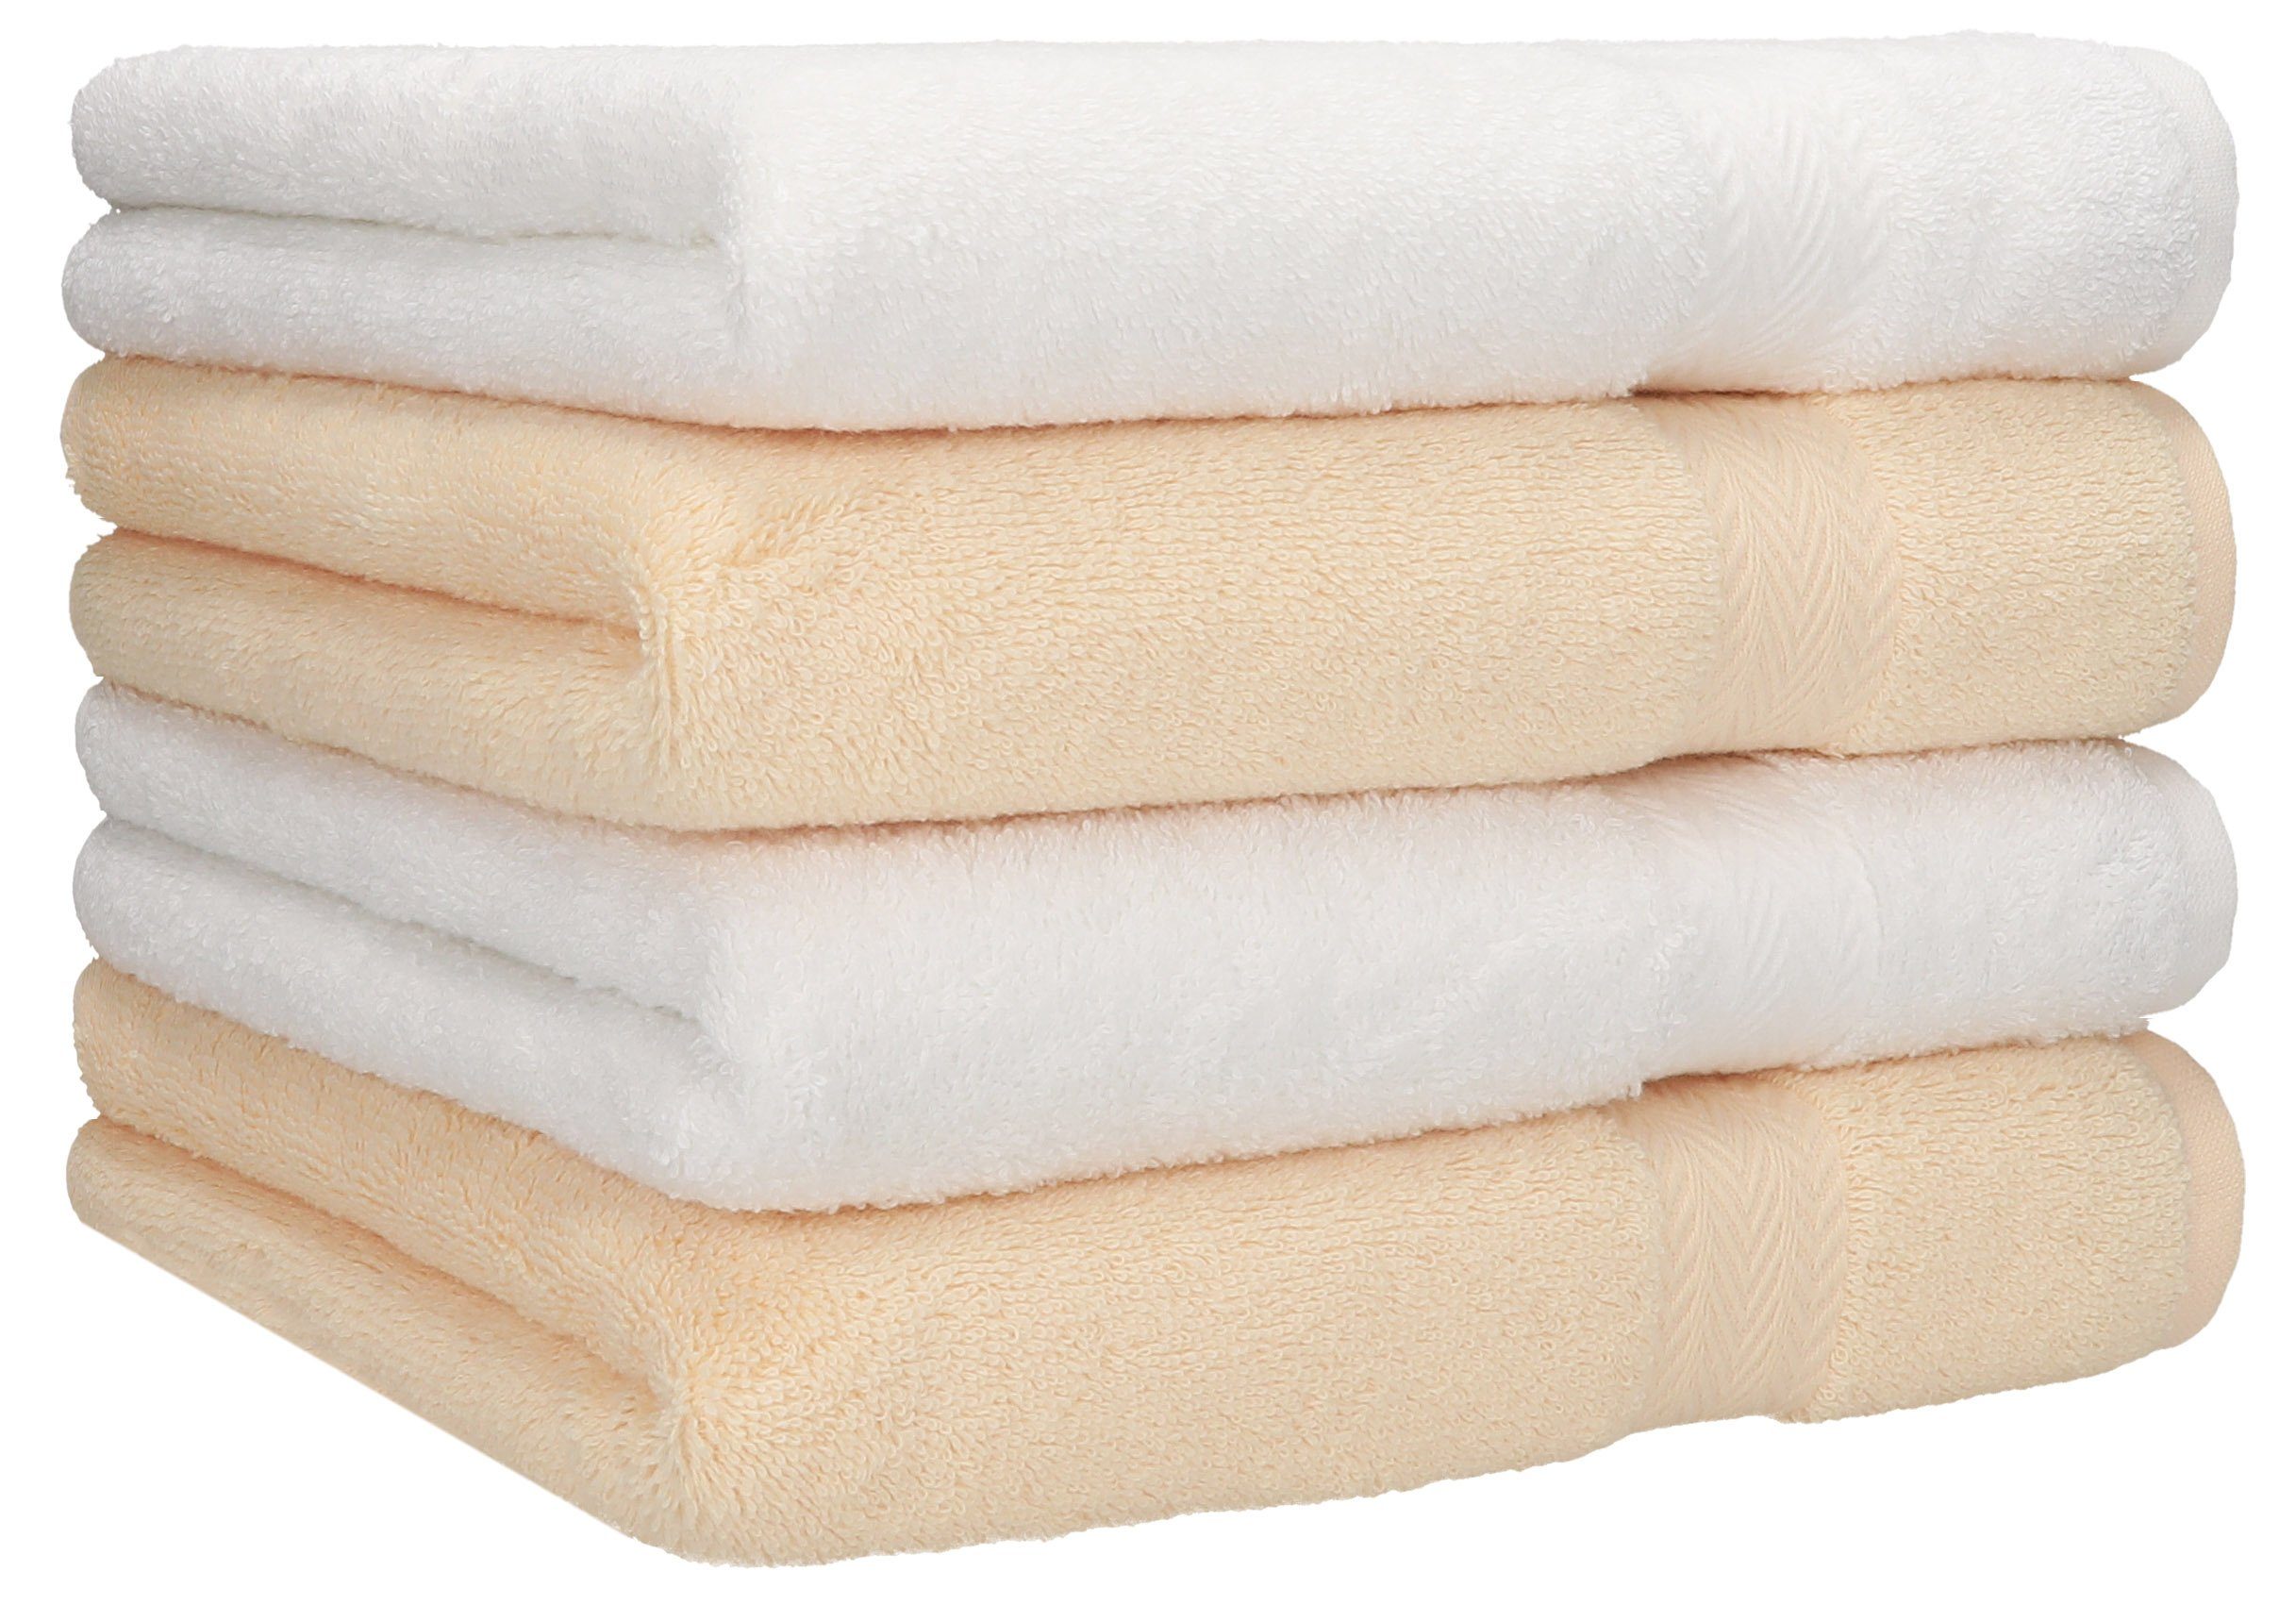 Betz Handtücher 4 Stück Handtücher Premium 4 Handtücher Farbe weiß und beige, 100% Baumwolle